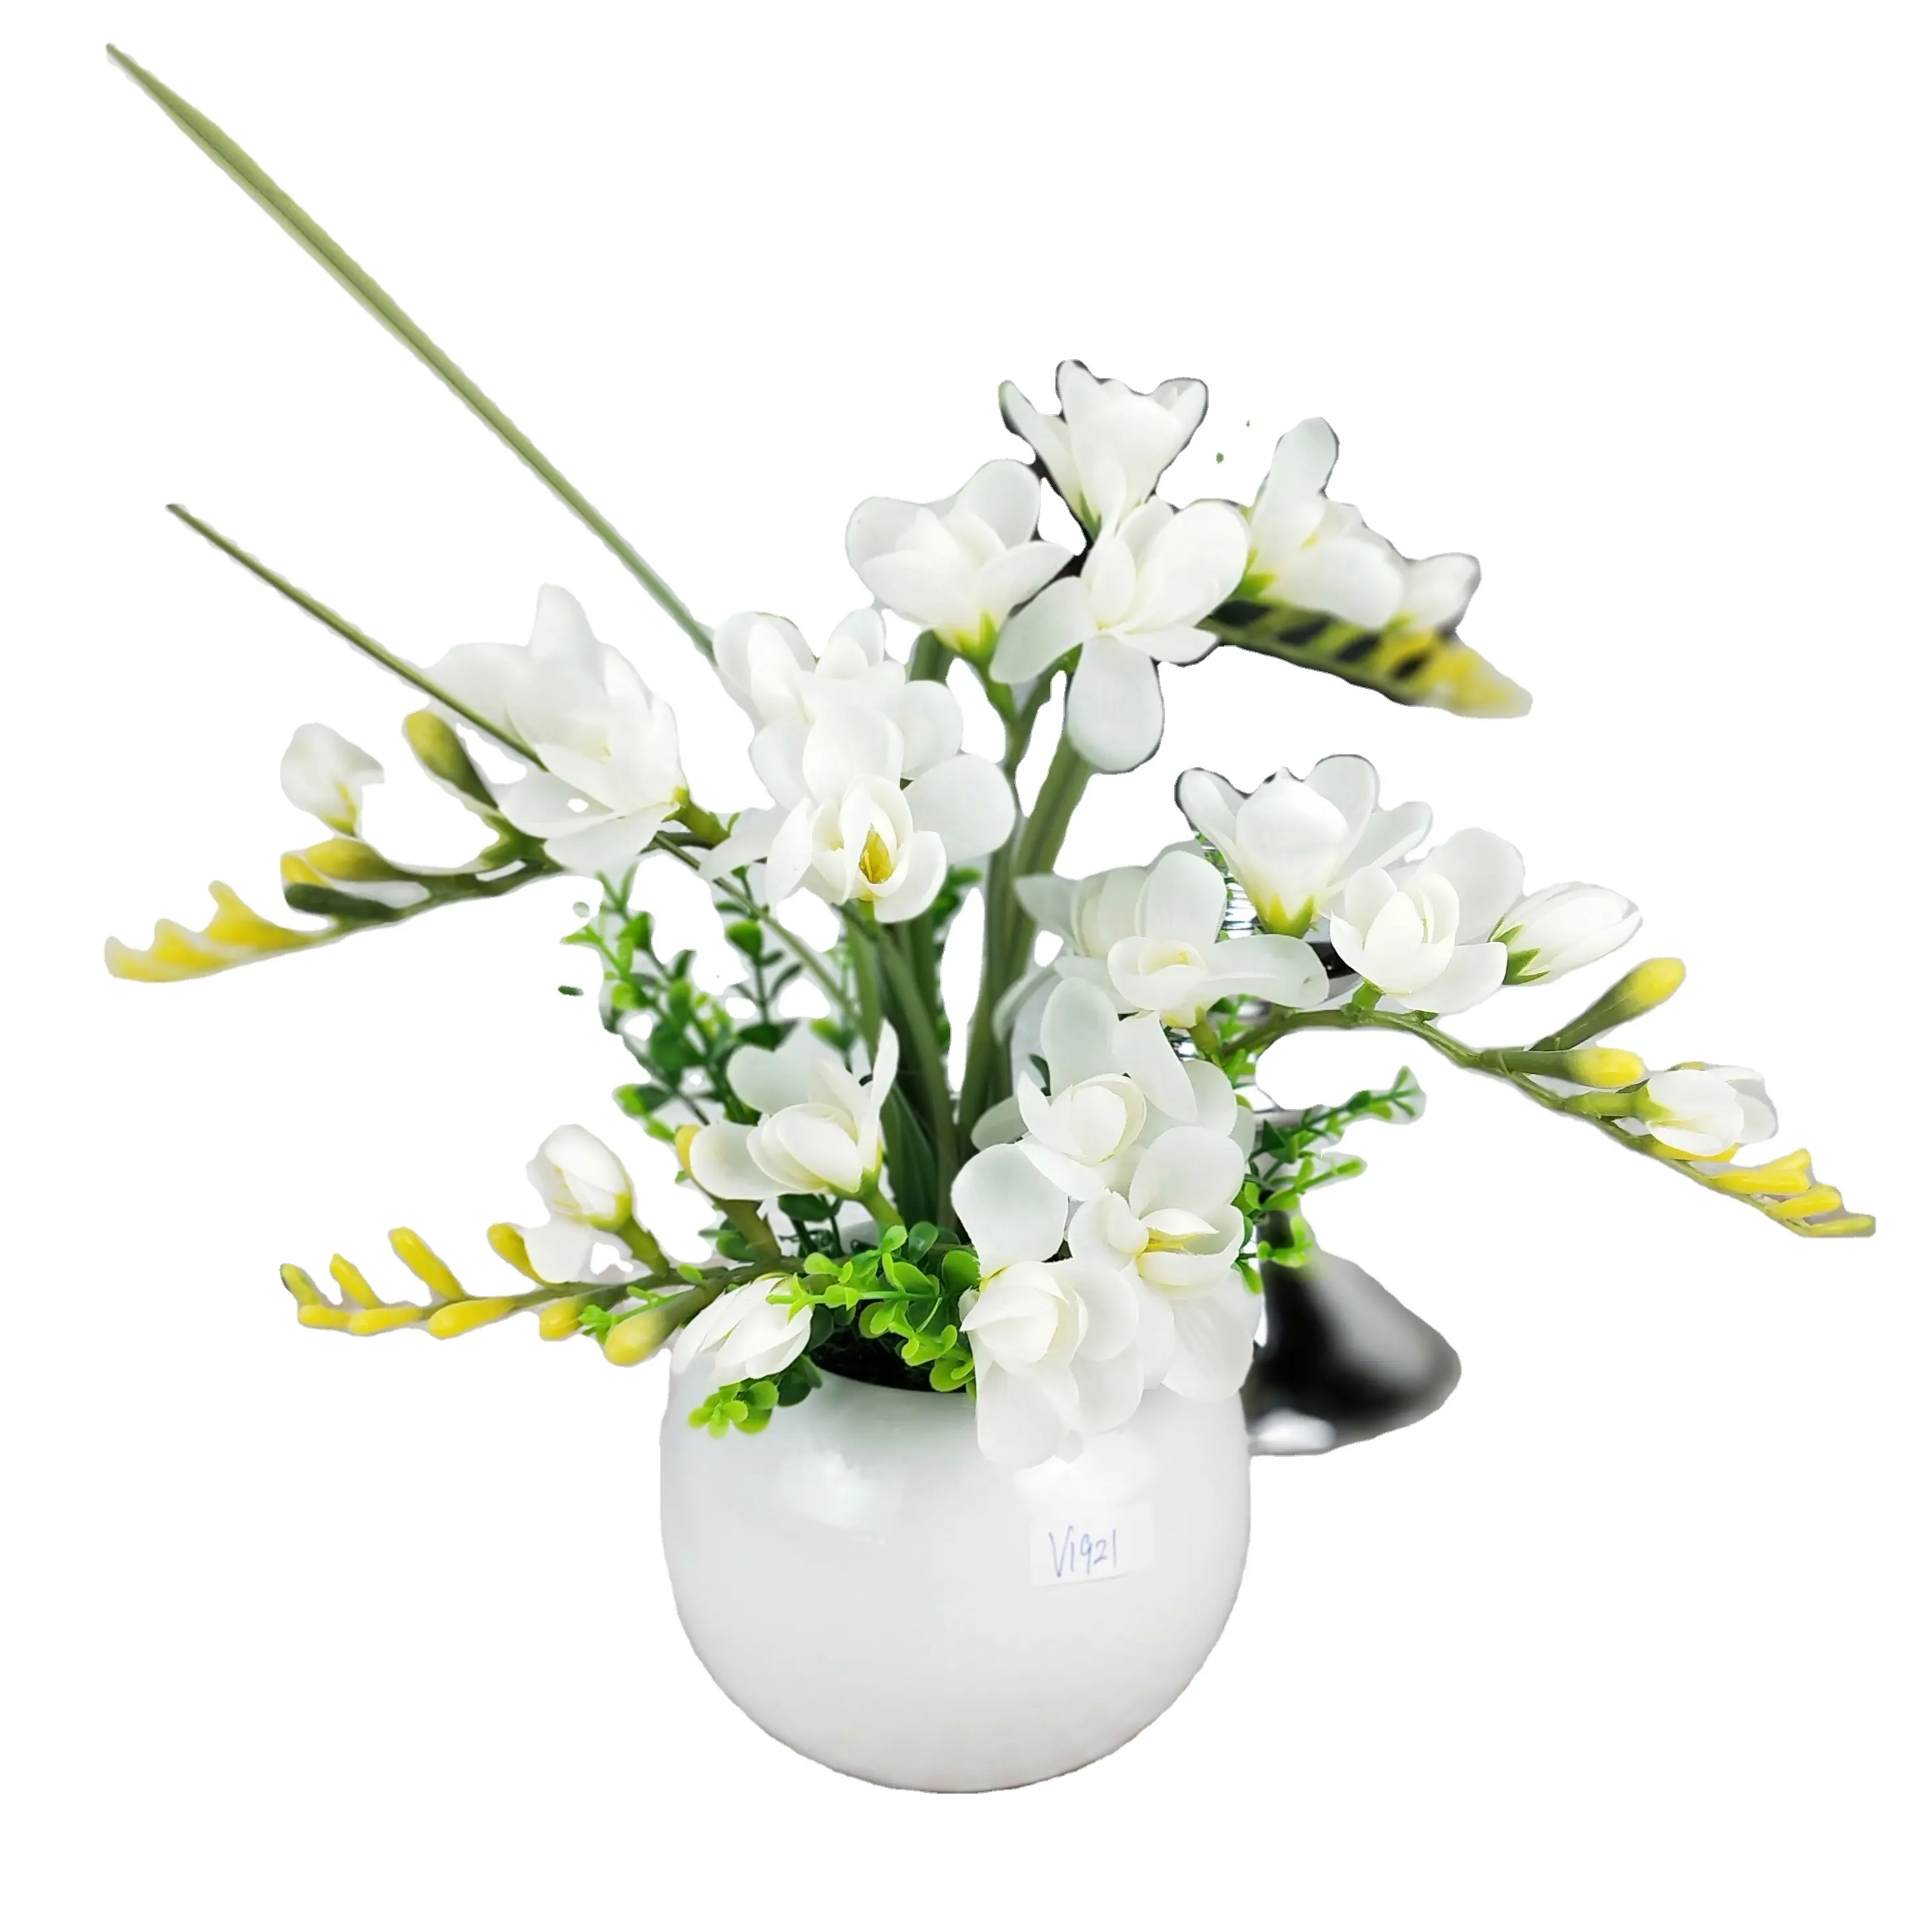 Arranjos de flores artificiais, arranjos de flores artificiais com pote de cerâmica redondo branco para mesas de mesa decorativas